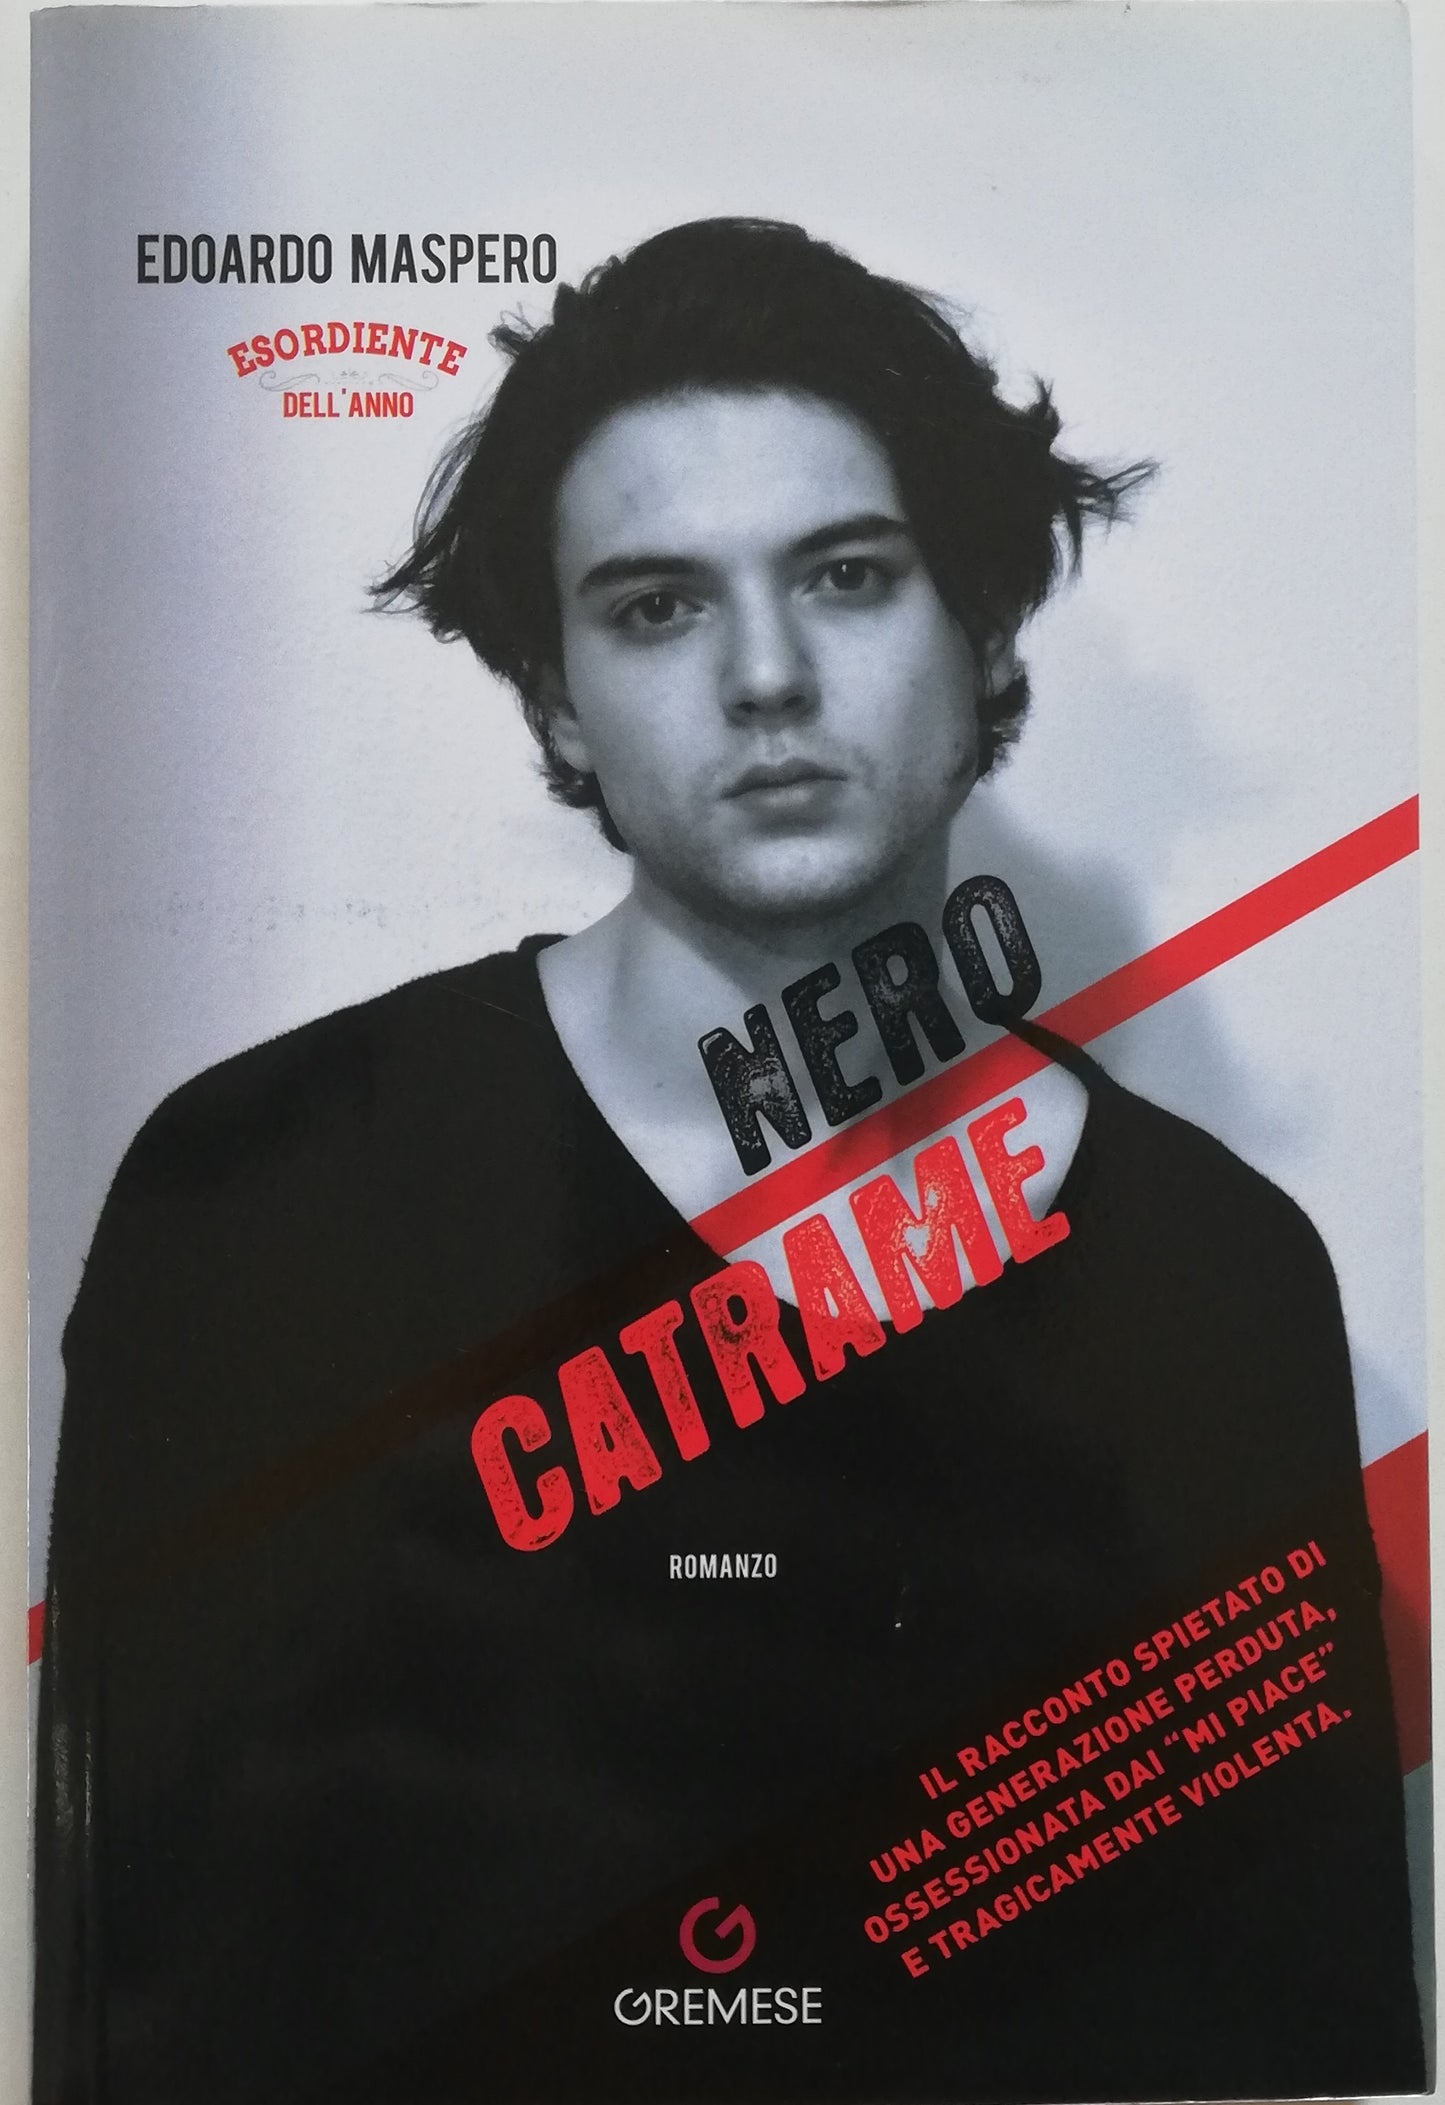 Nero catrame - Gremese Editore